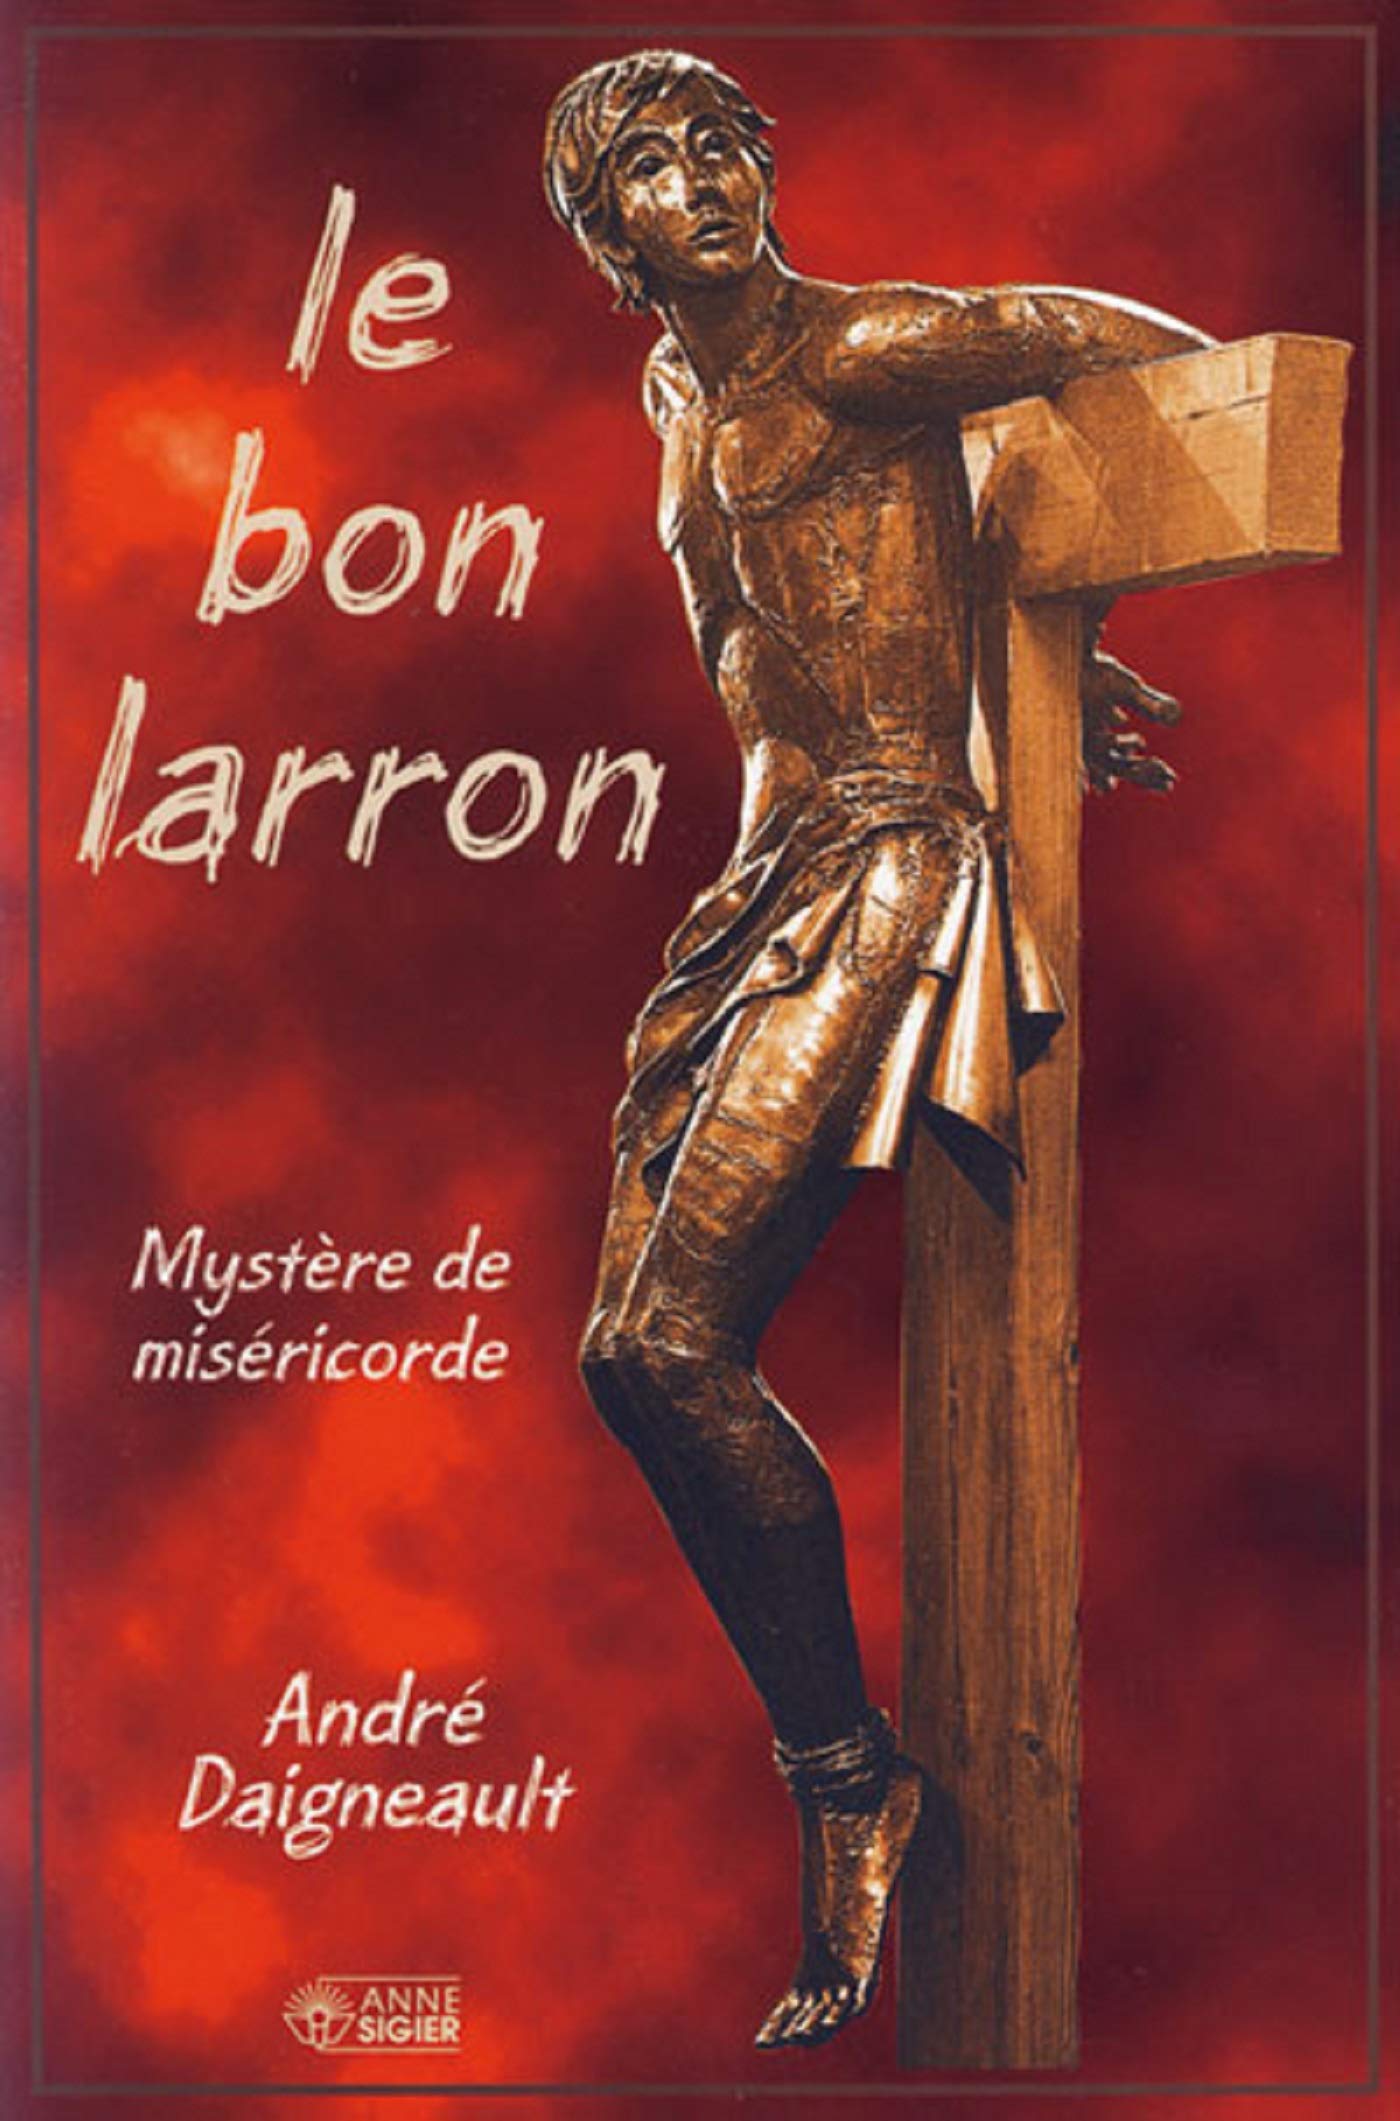 Livre ISBN 2891293371 Le bon larron (André Daigneault)